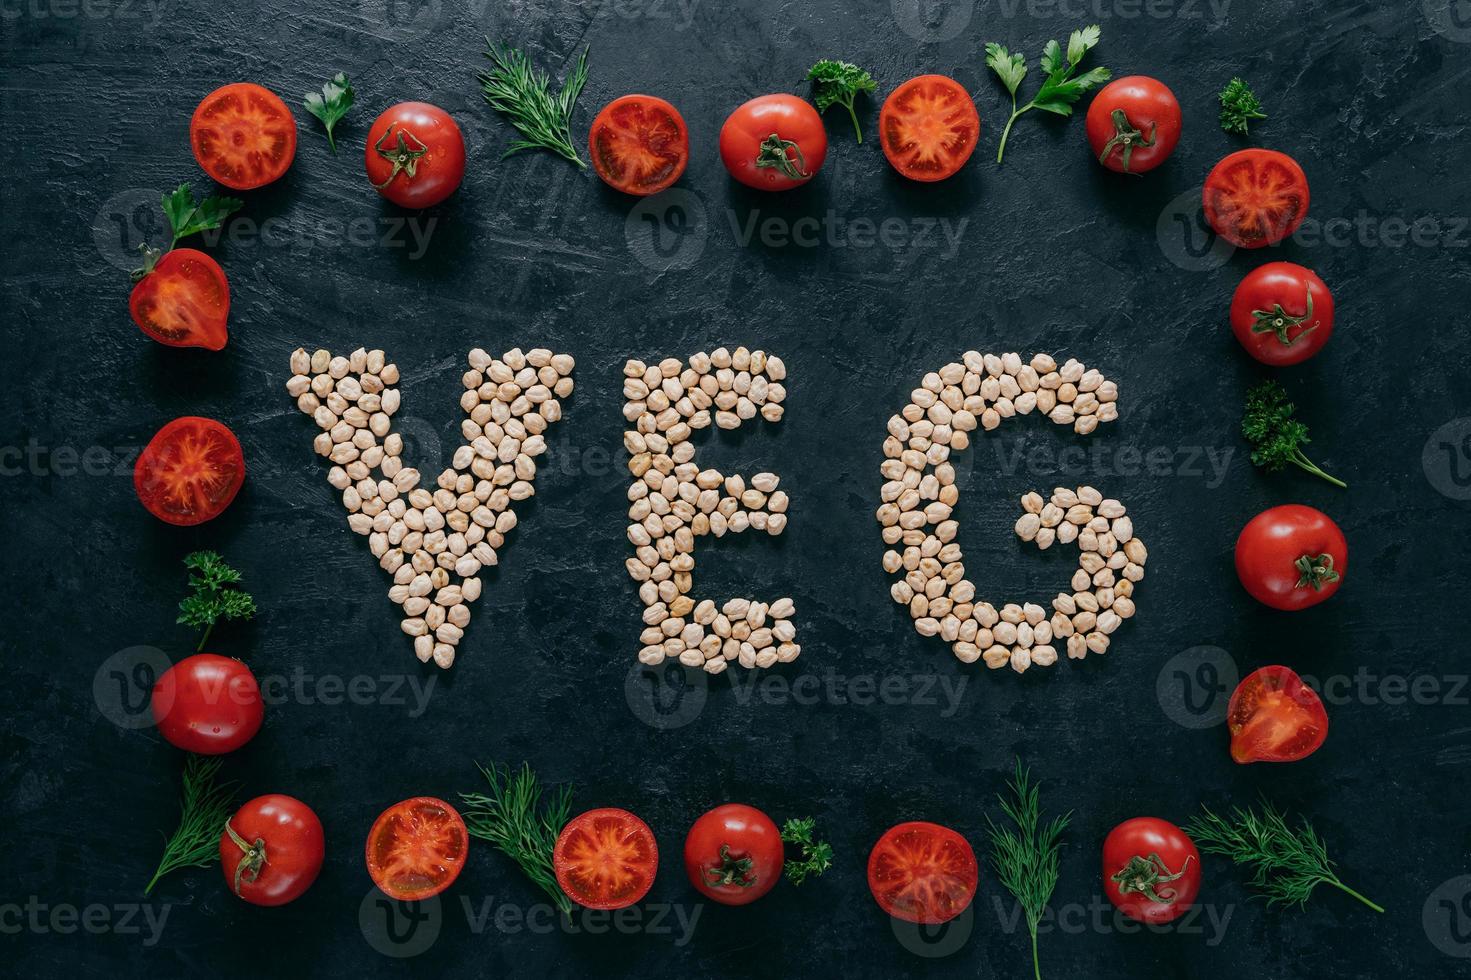 Foto von Tomatenrahmen und Kichererbsenbuchstaben, die Gemüse bedeuten. Bio-Saatgut innerhalb des Gemüserahmens isoliert auf dunklem Hintergrund. Vegetarismus